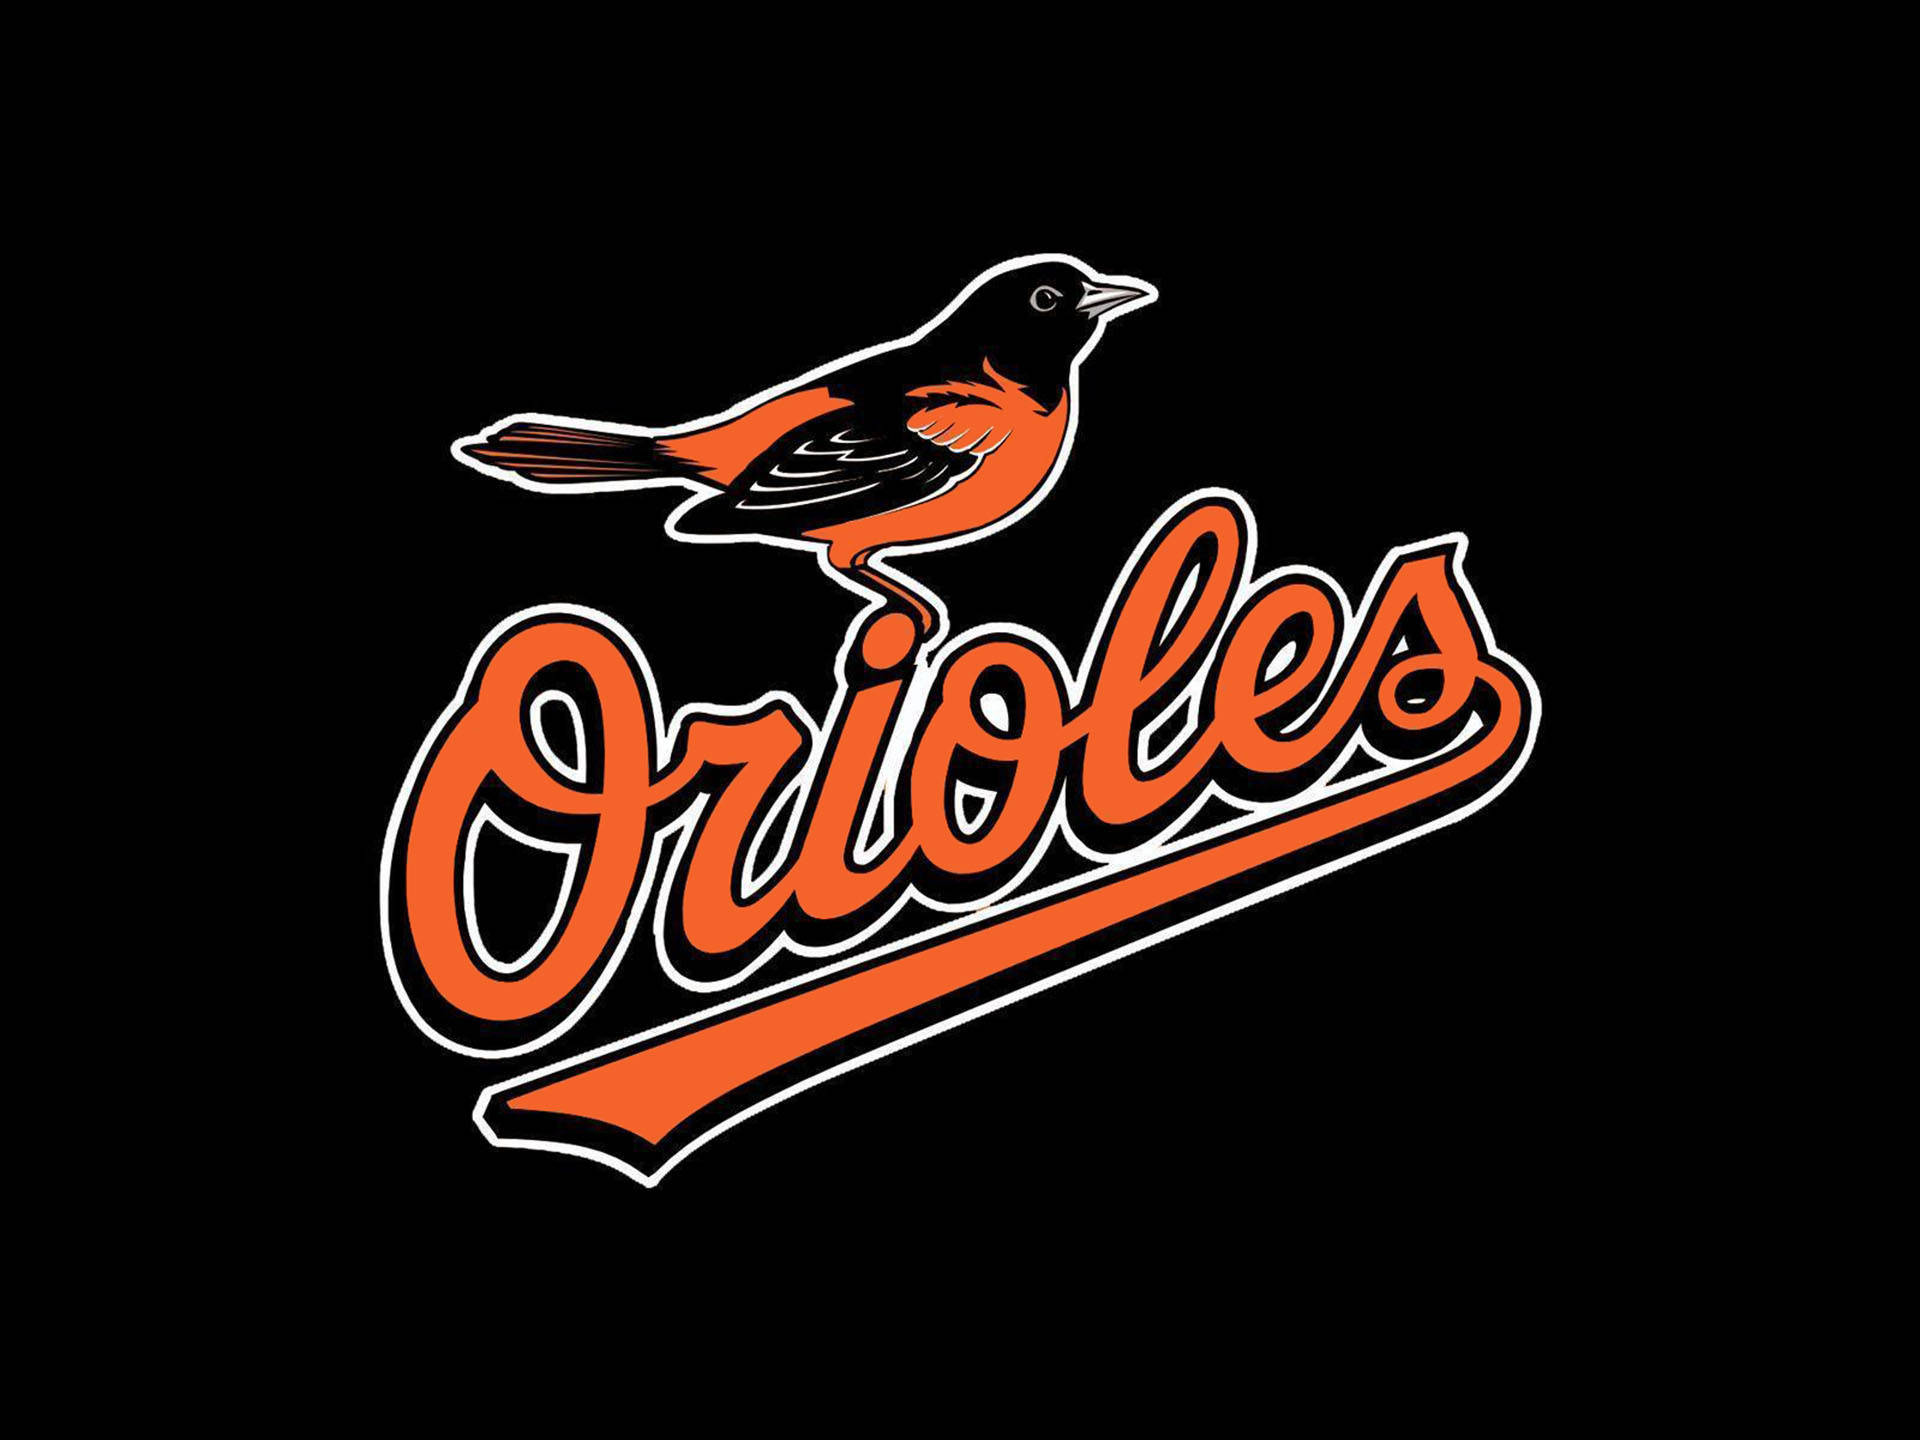 2009 Baltimore Orioles Logo Wallpaper